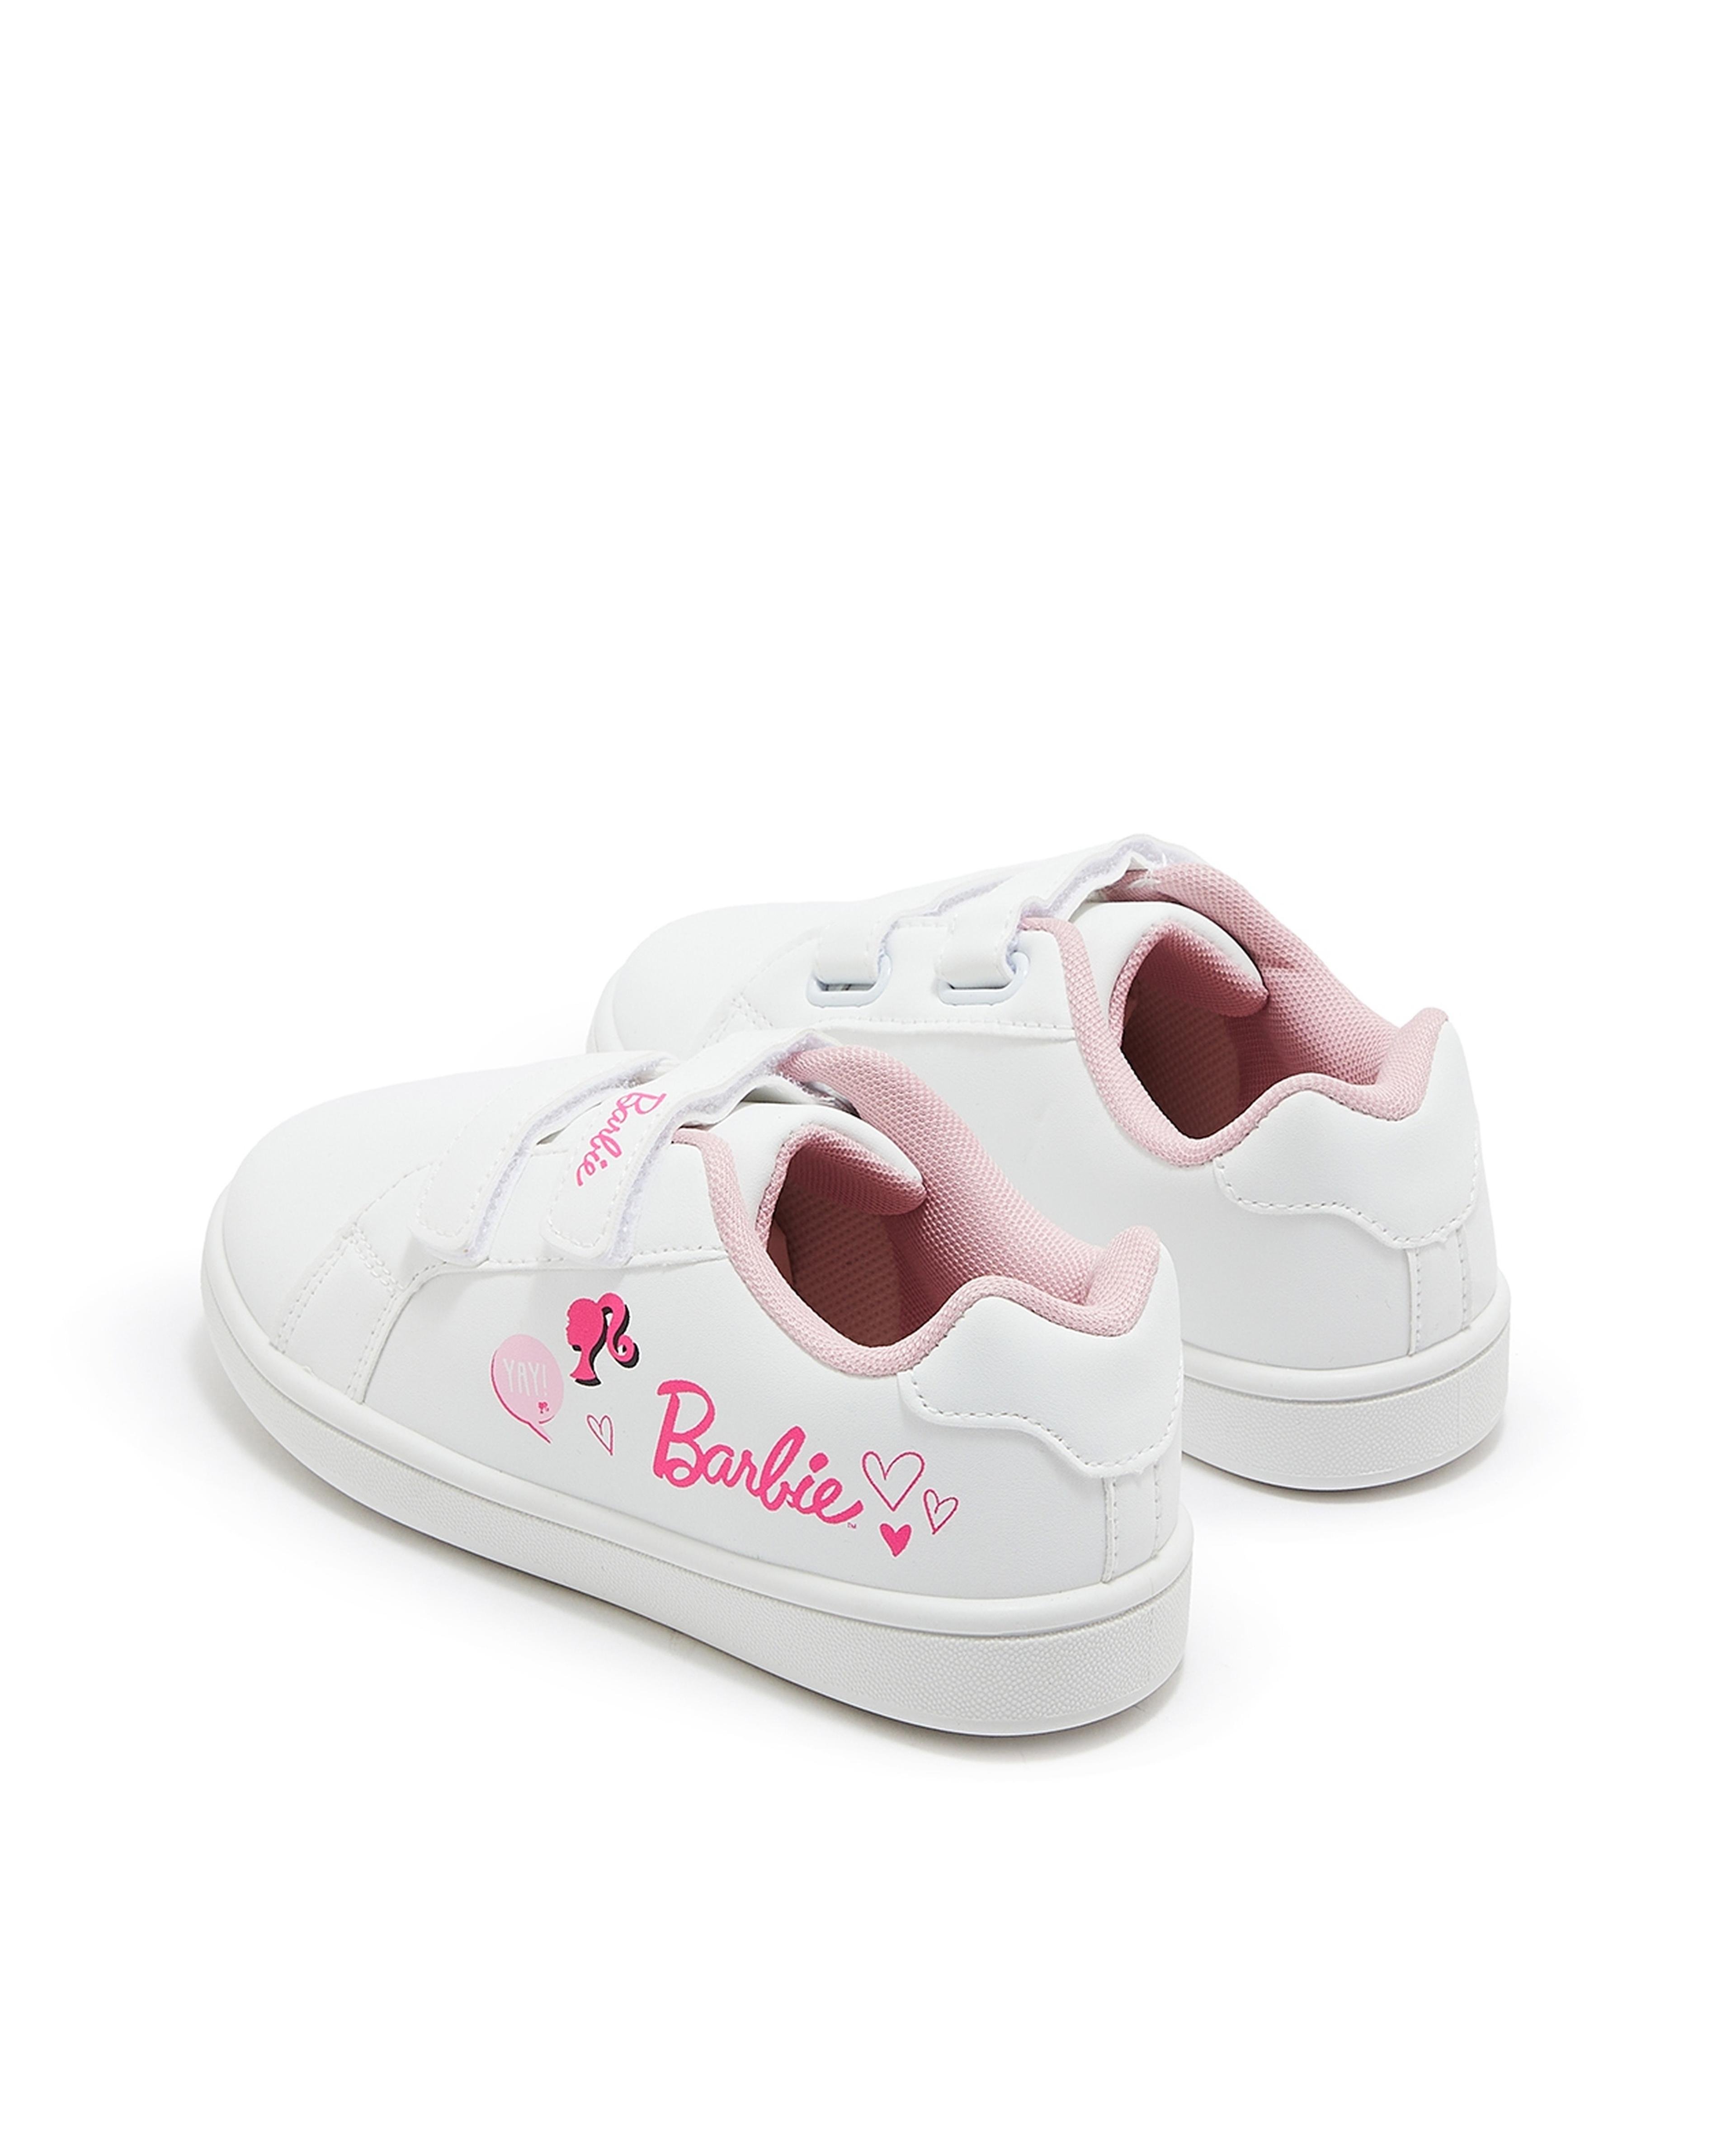 Barbie Print Velcro Sneakers